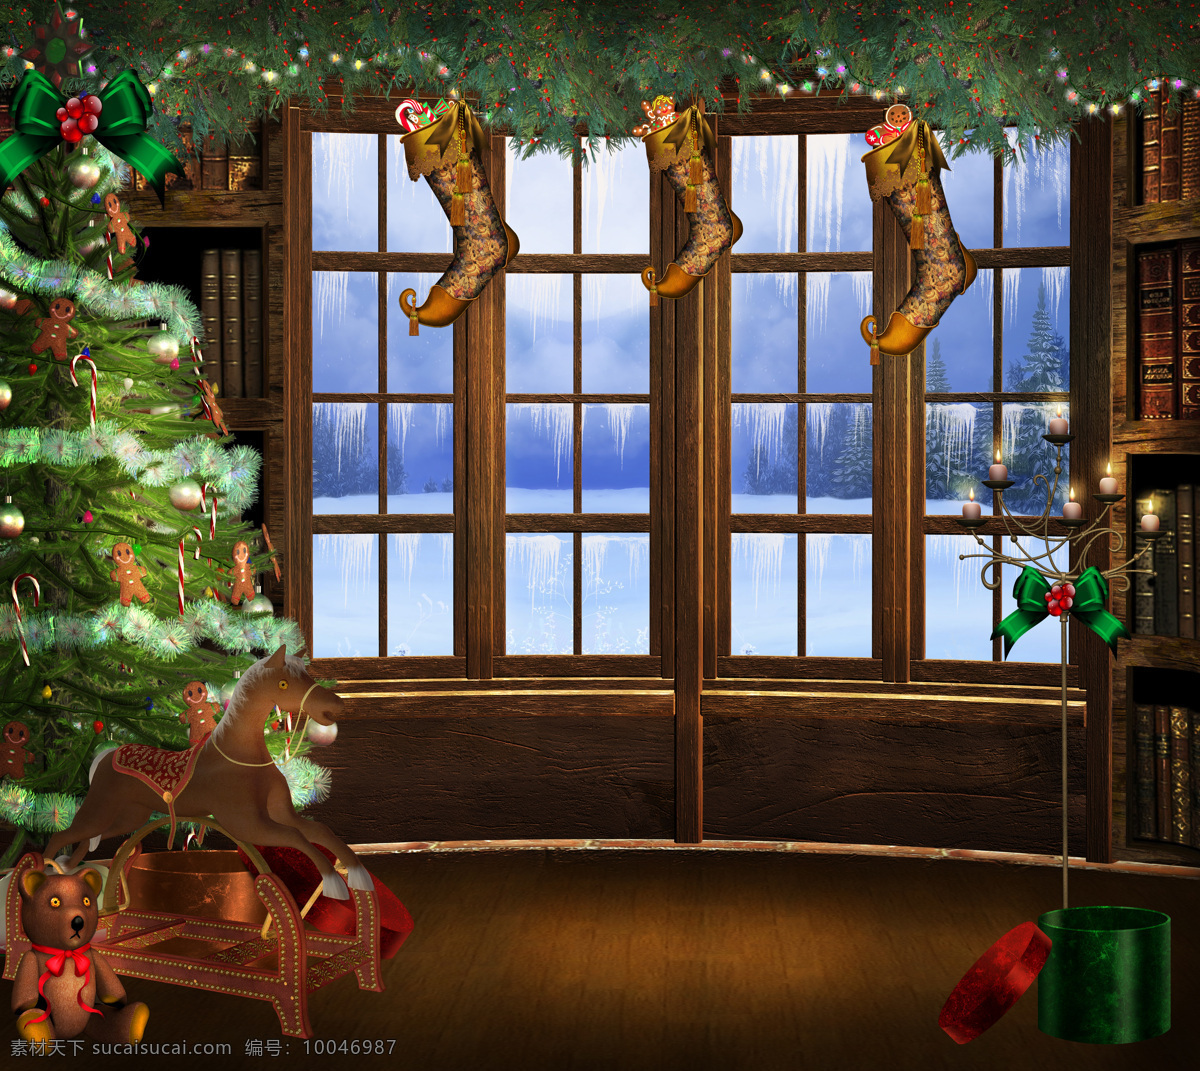 梦幻 圣诞 圣诞节 梦幻圣诞节 节日快乐 圣诞树 圣诞礼物 礼物 窗户 雪花 冰条 节日庆典 生活百科